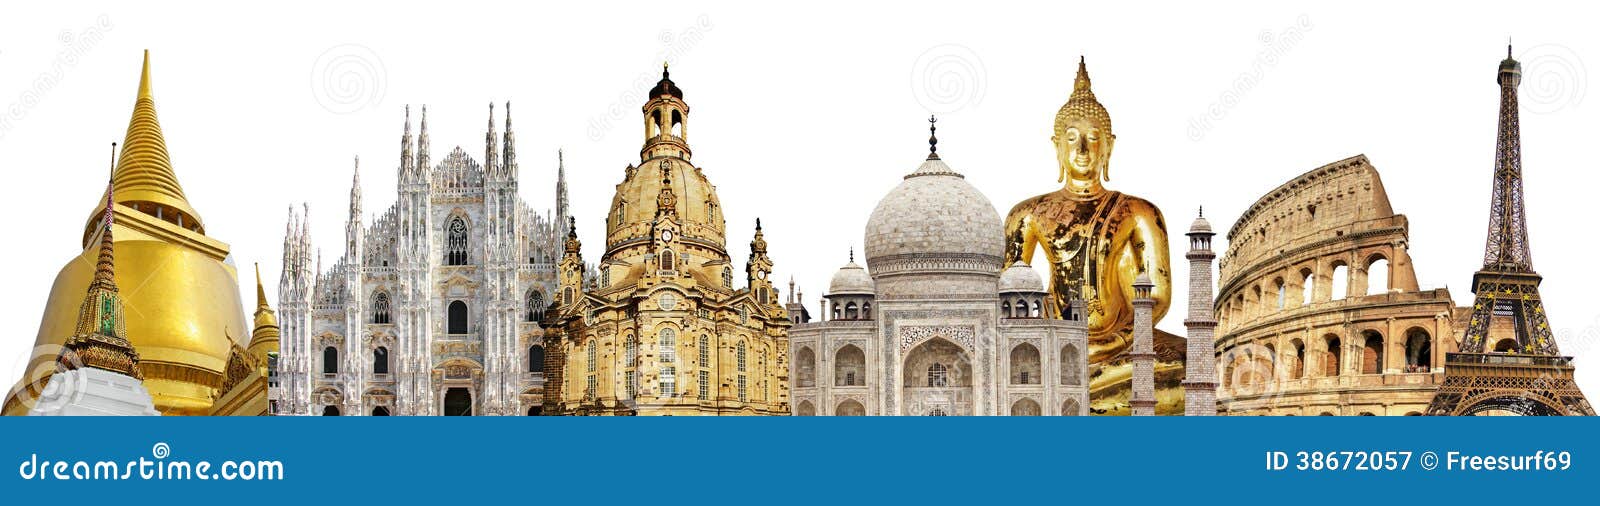 travelling  - world famous landmarks